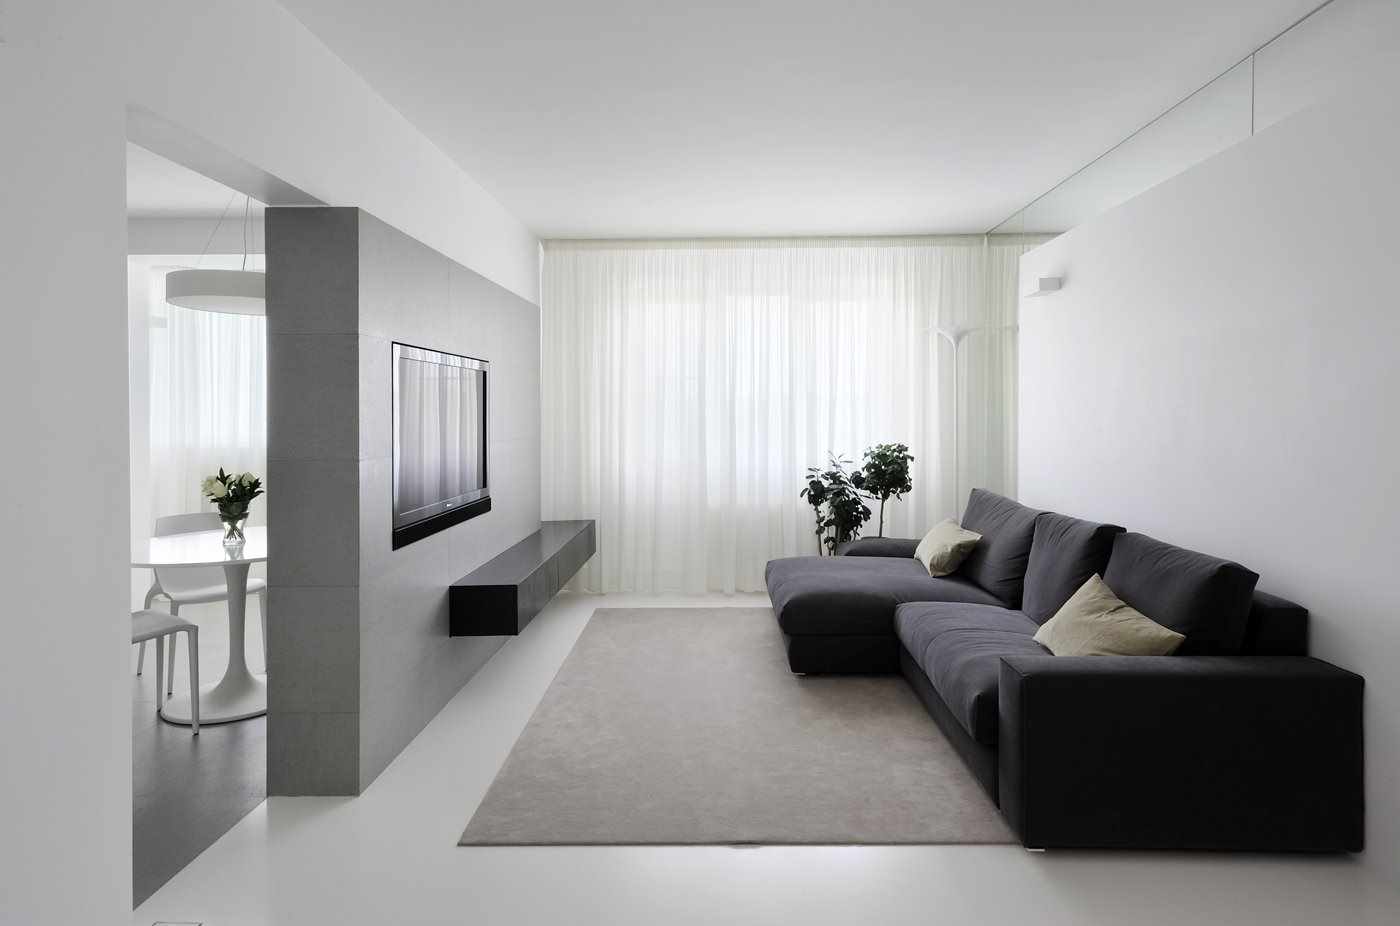 فكرة استخدام ديكور خفيف لغرفة المعيشة بأسلوب بسيط